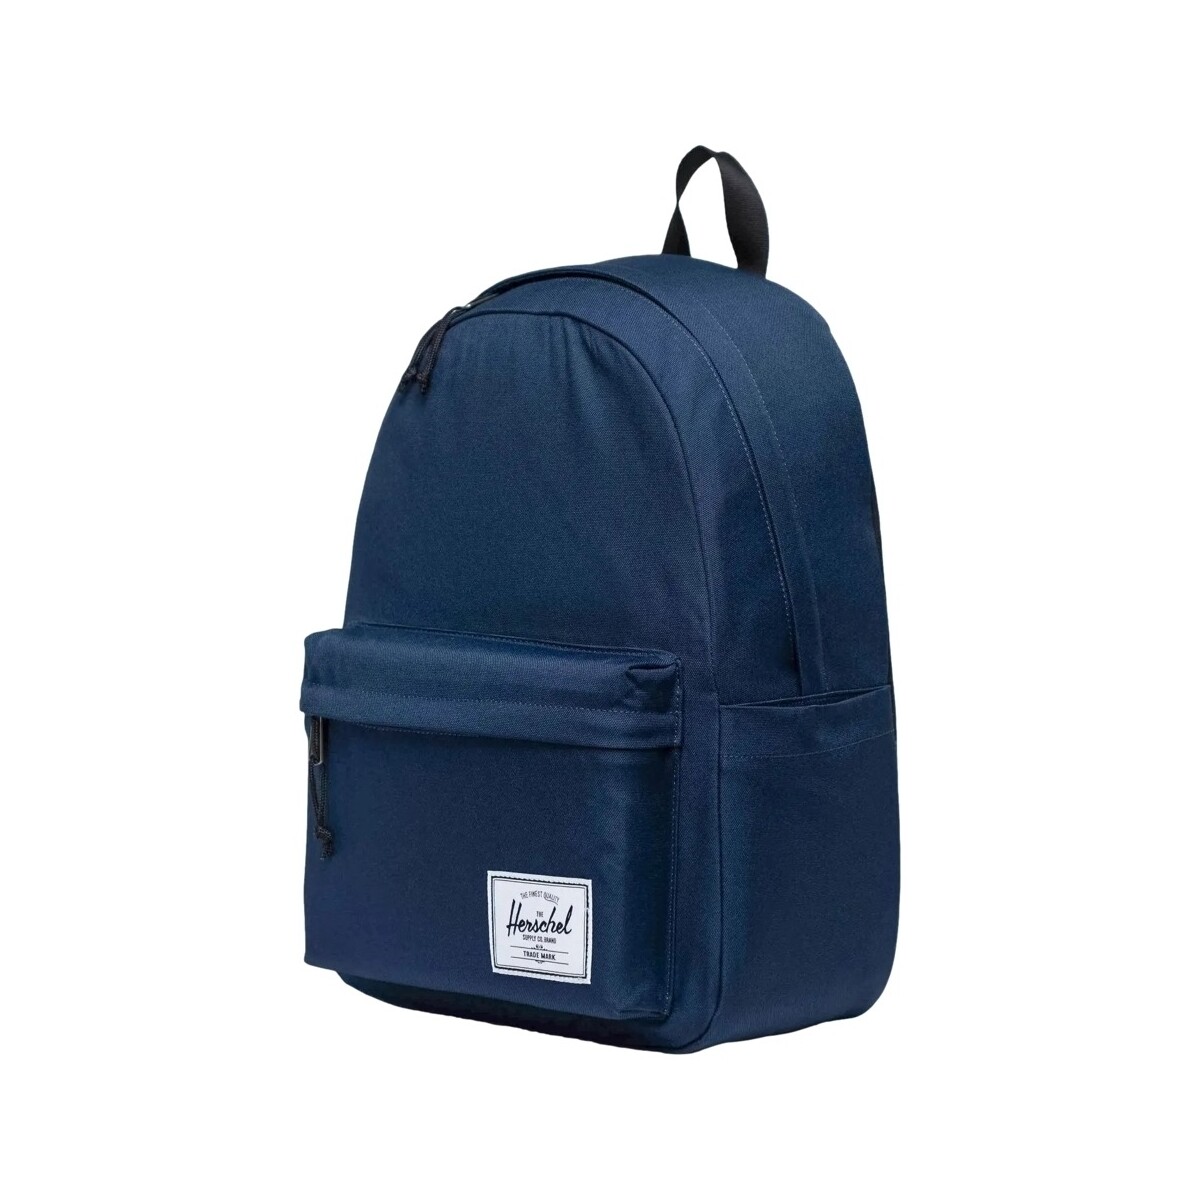 Herschel Bleu Classic XL Backpack - Navy lhaR4plu